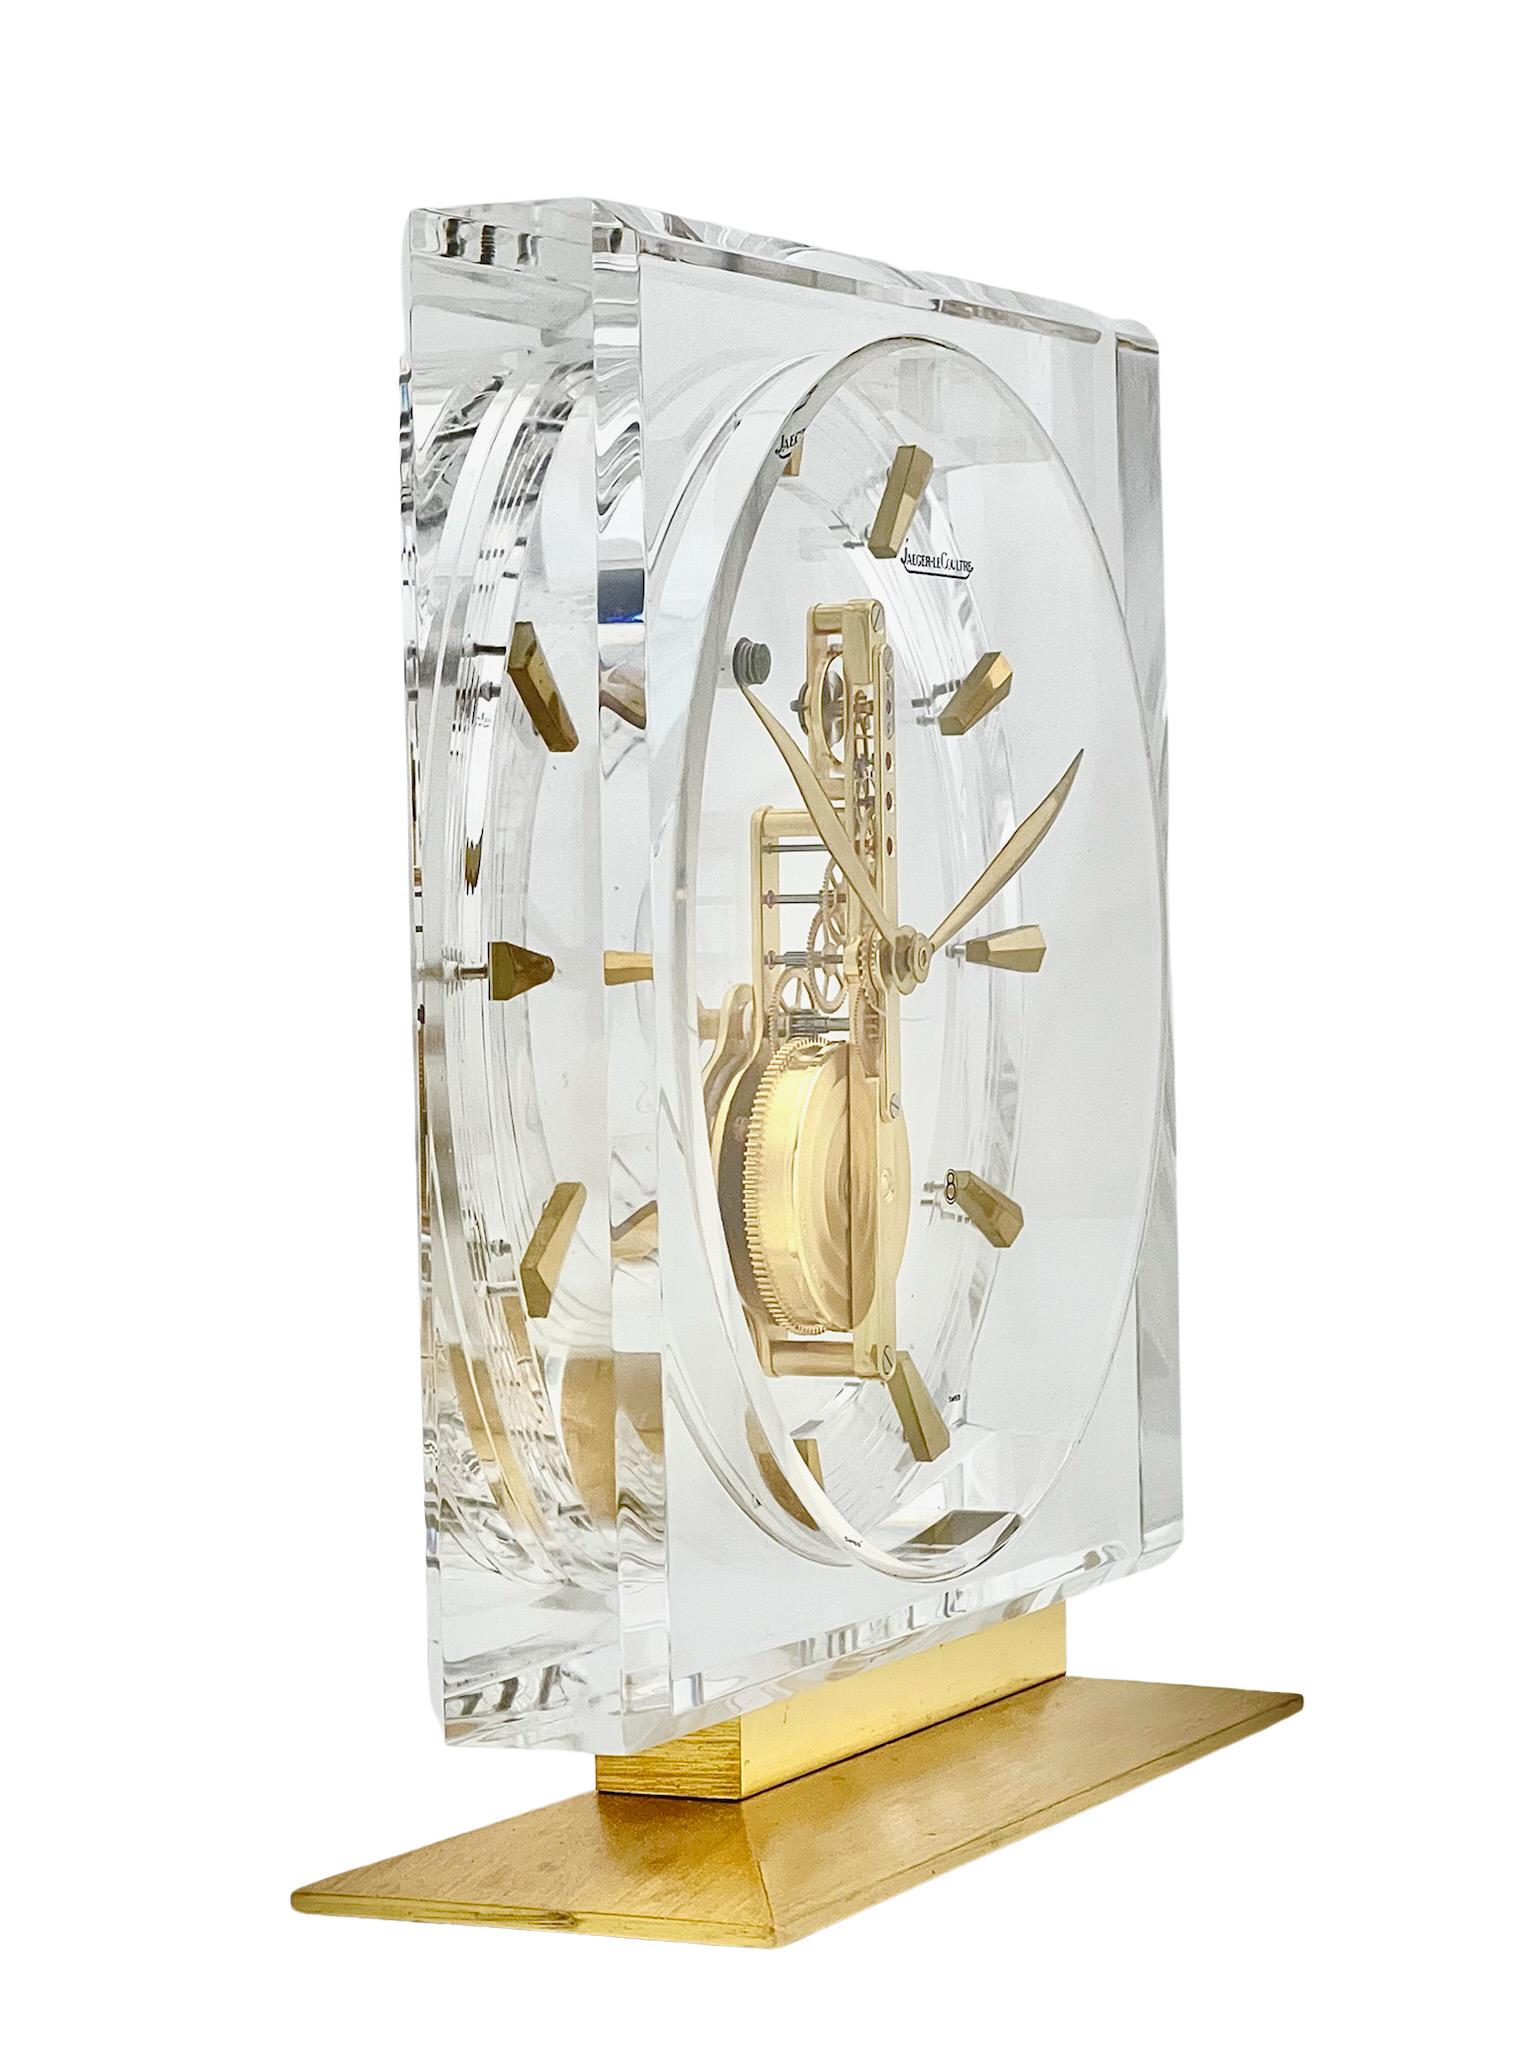 Une superbe horloge squelette en lucite et laiton de Jaeger-LeCoultre, au design minimaliste et épuré, qui trouvera sa place dans n'importe quel décor. La beauté de ces horloges squelettes réside dans le fait que vous pouvez voir le mouvement suisse